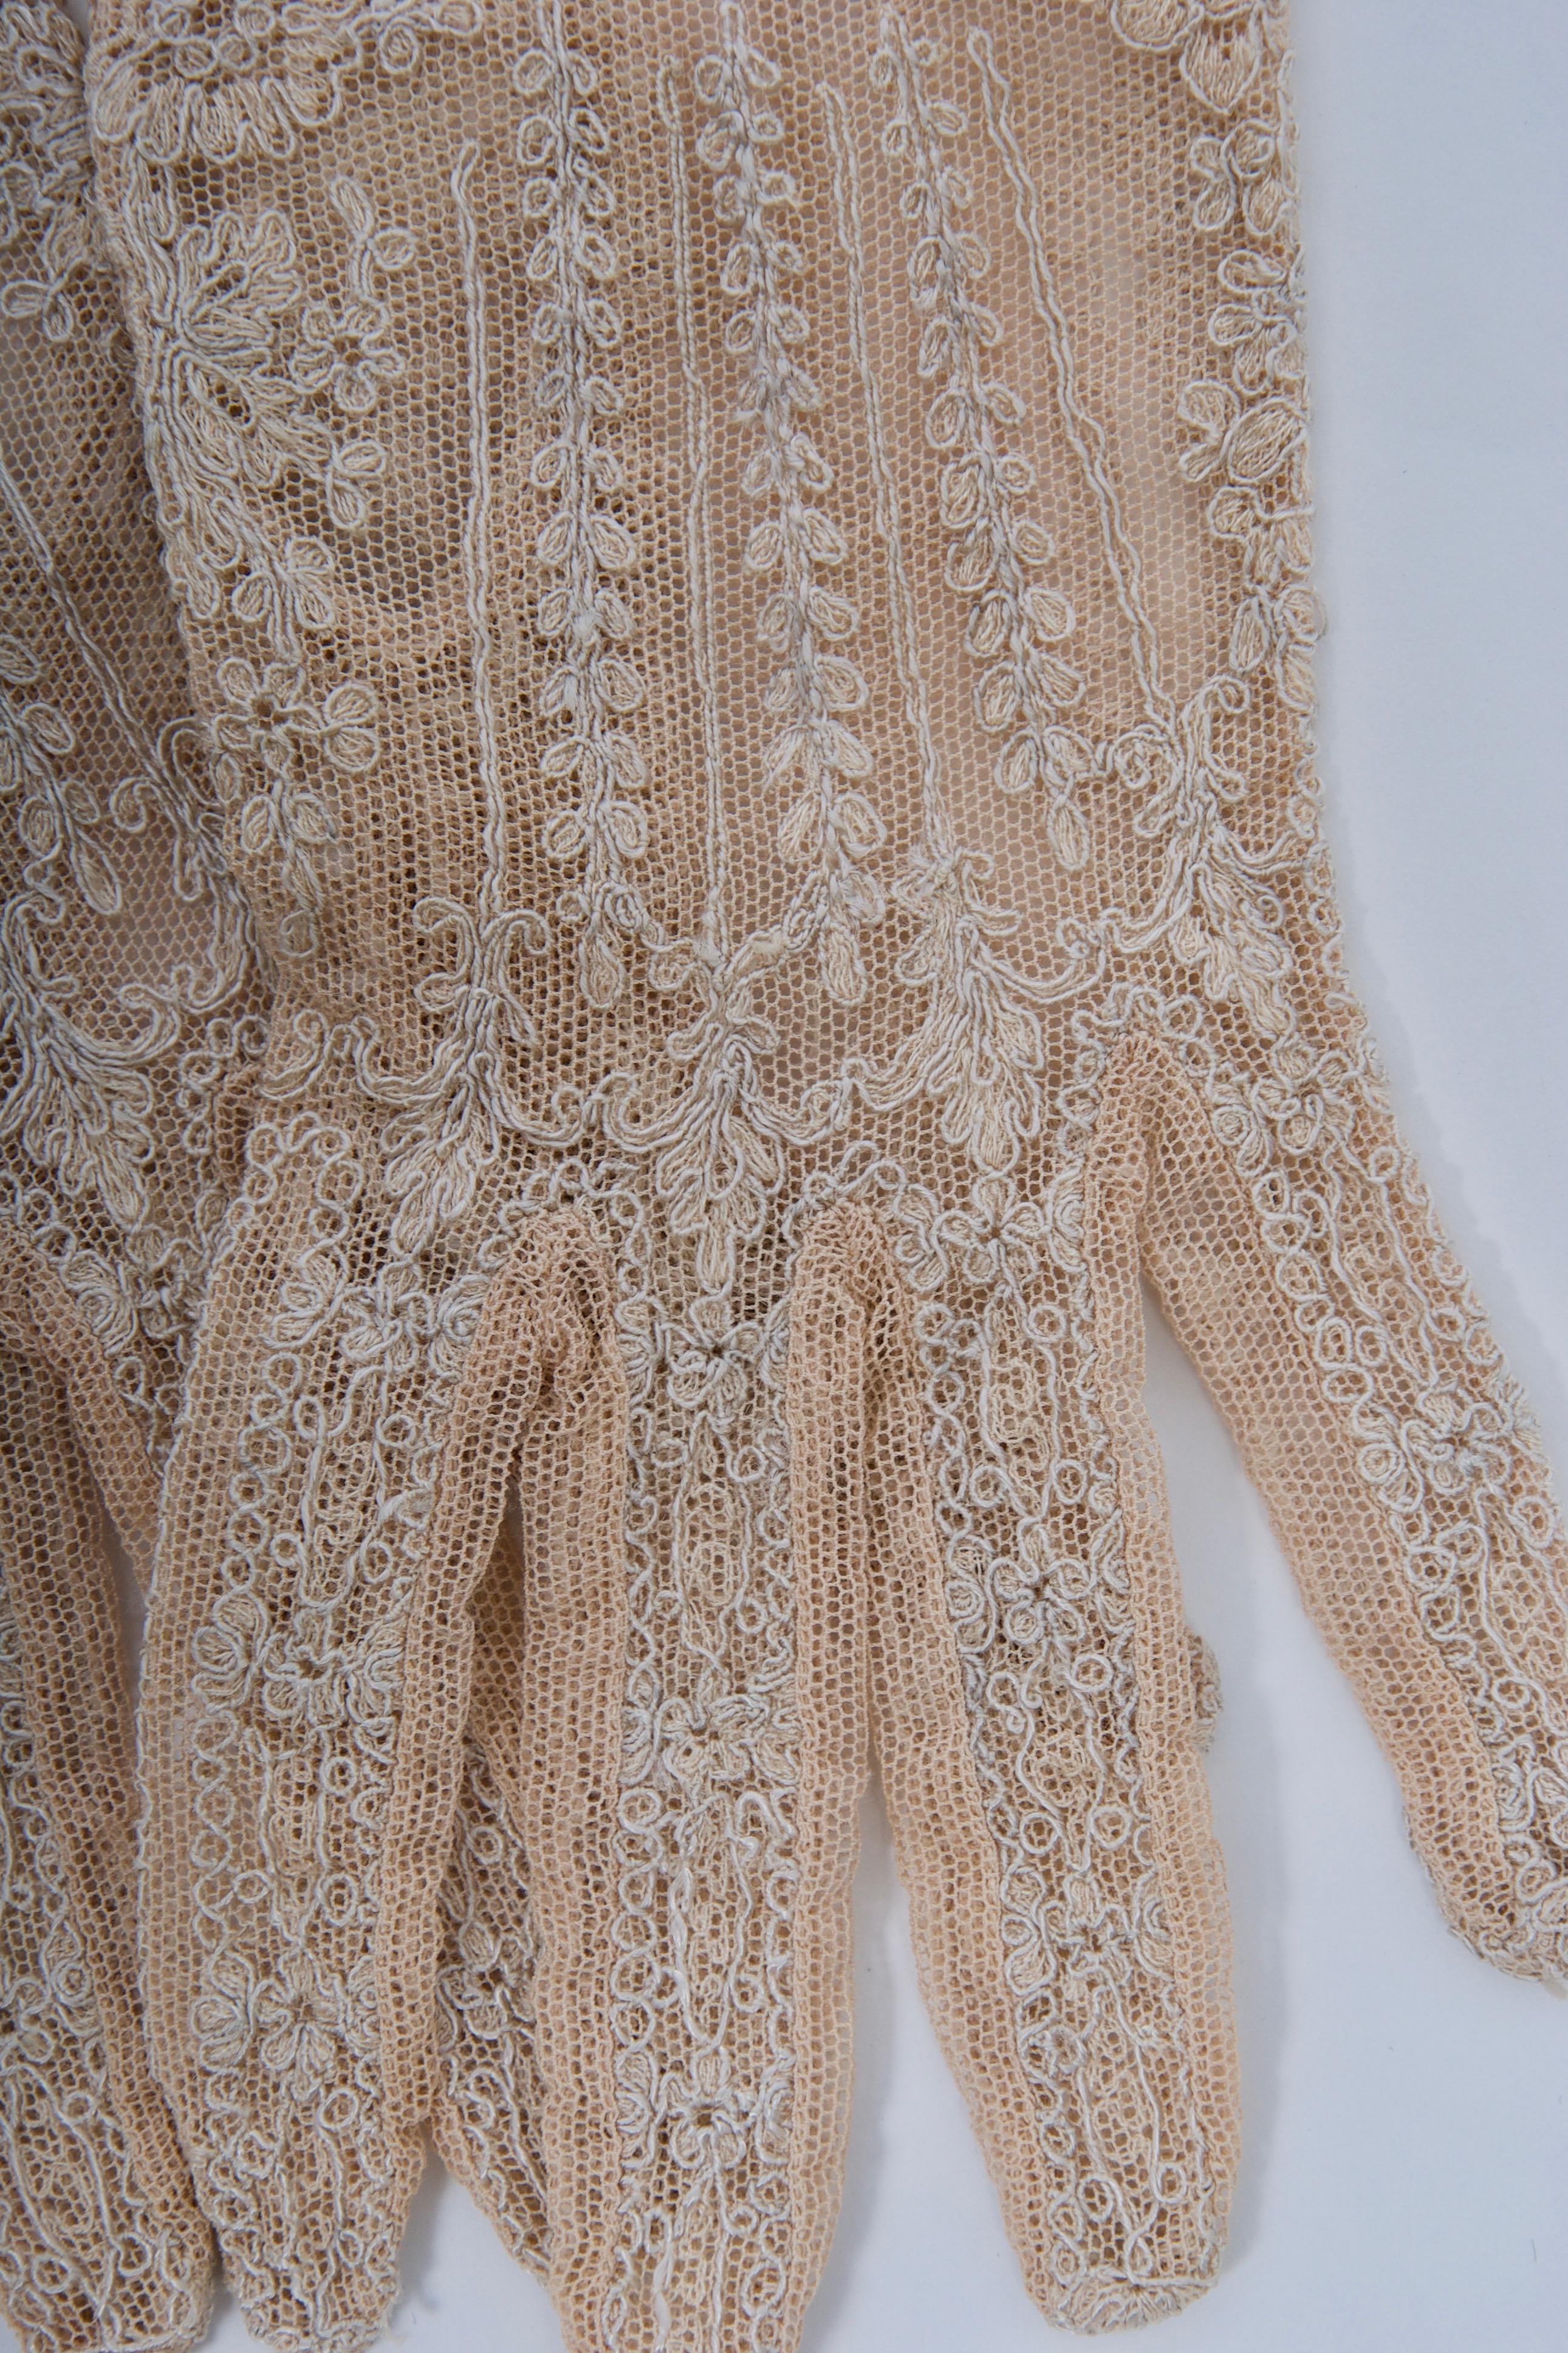 vintage lace gloves crochet pattern